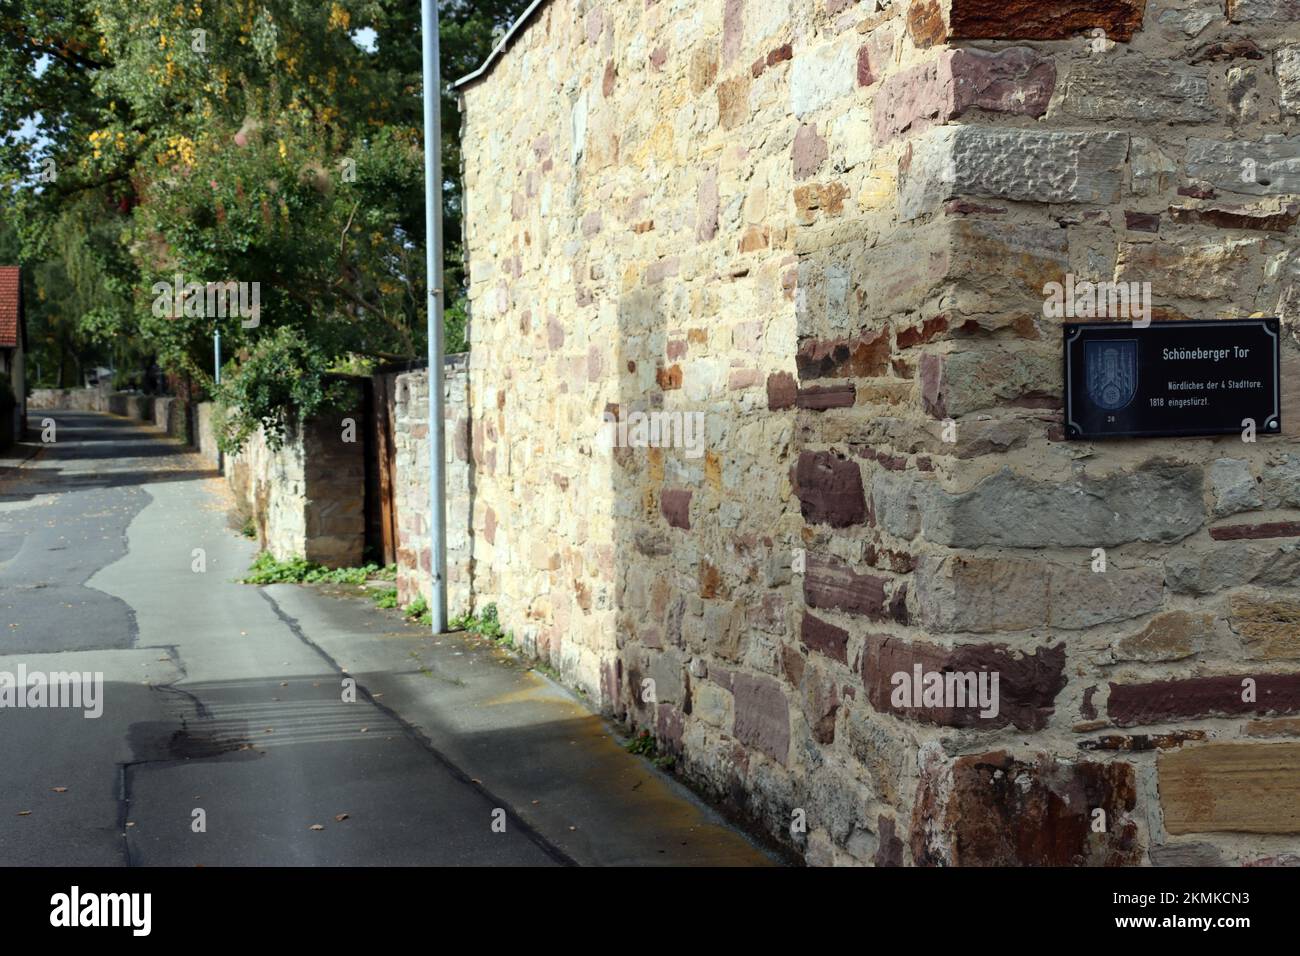 restaurierte Stadtmauer am ehemaligen Schöneberger Tor, Hessen, Deutschland, Dornroeschenstadt Hofgeismar Stock Photo